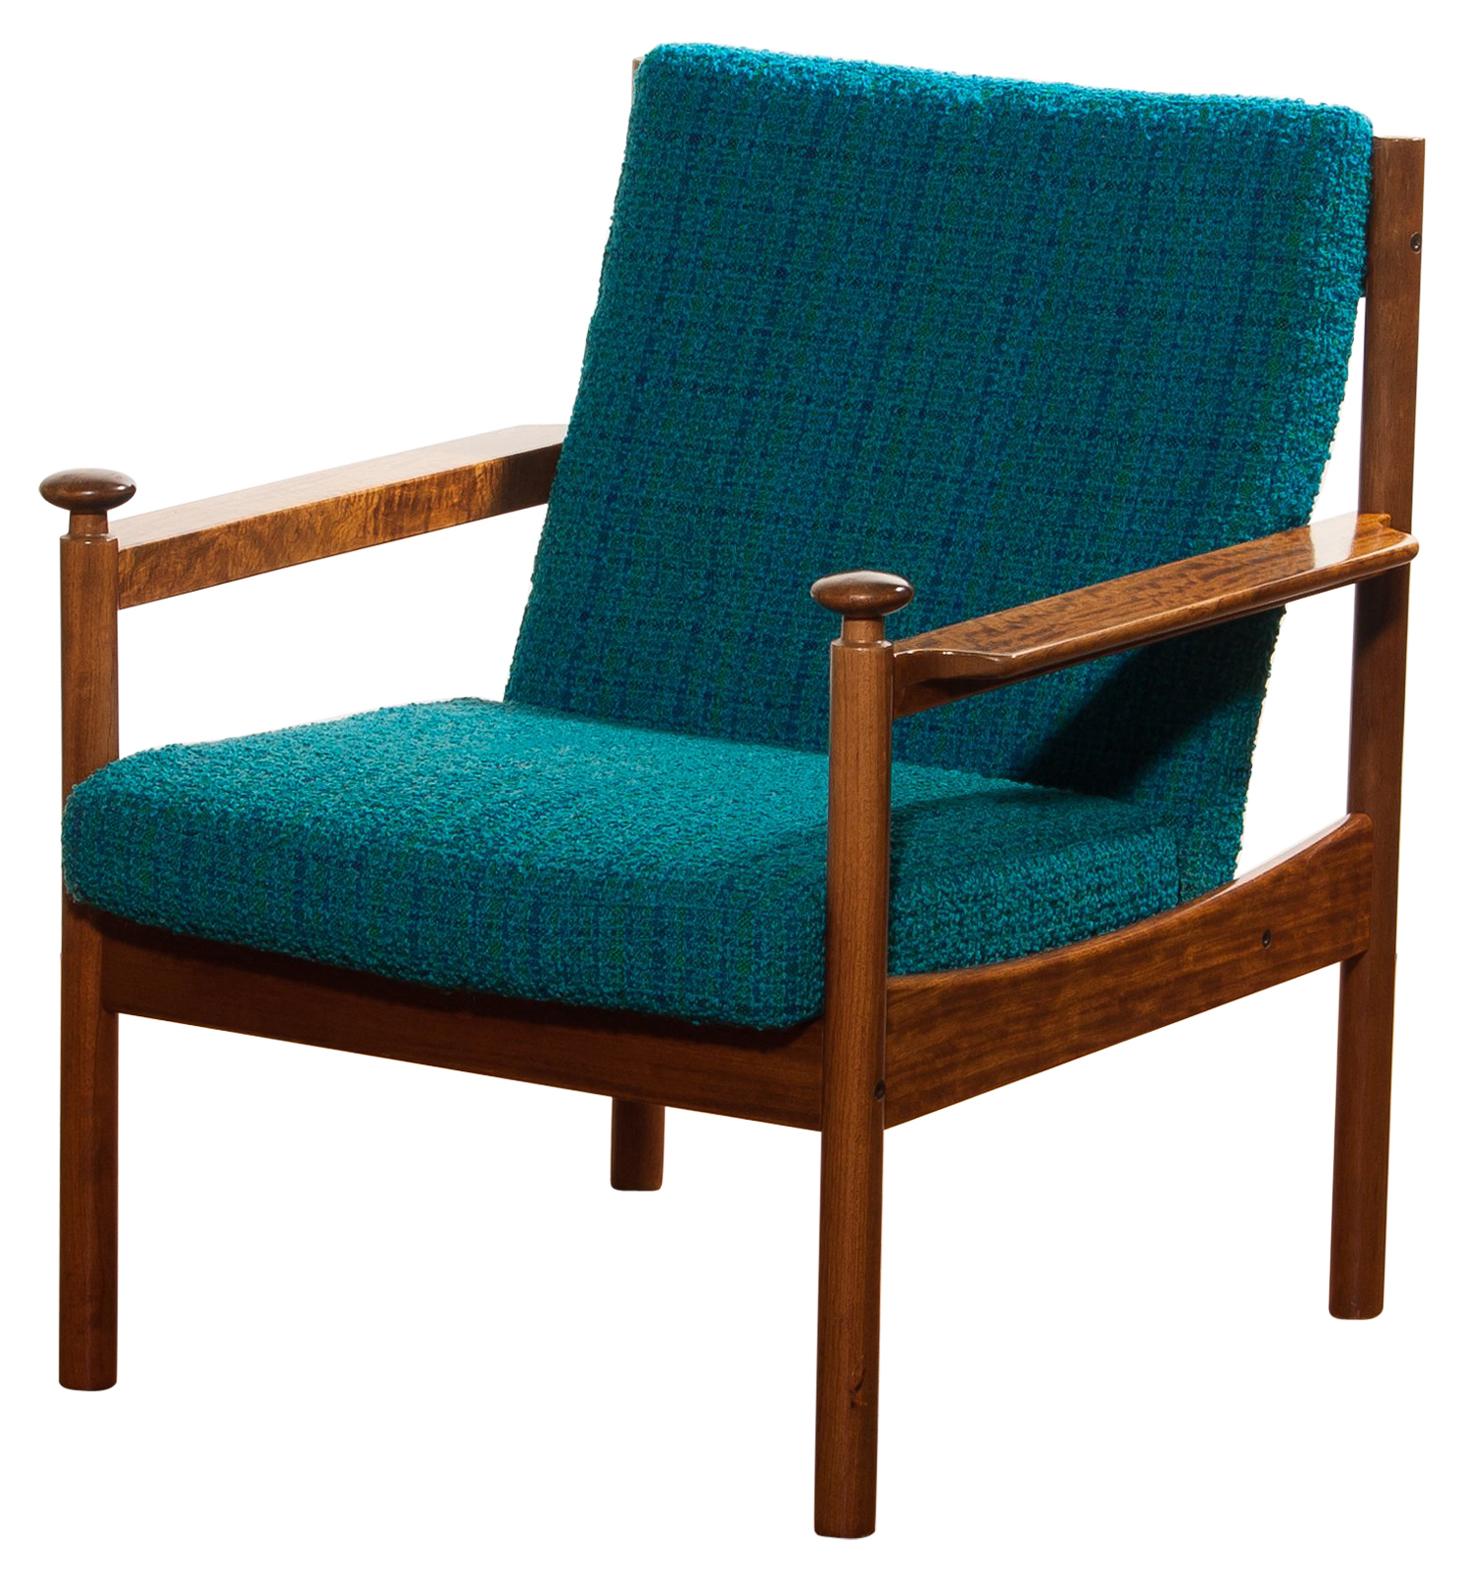 1950s Chair by Torbjørn Afdal for Sandvik & Co. Mobler